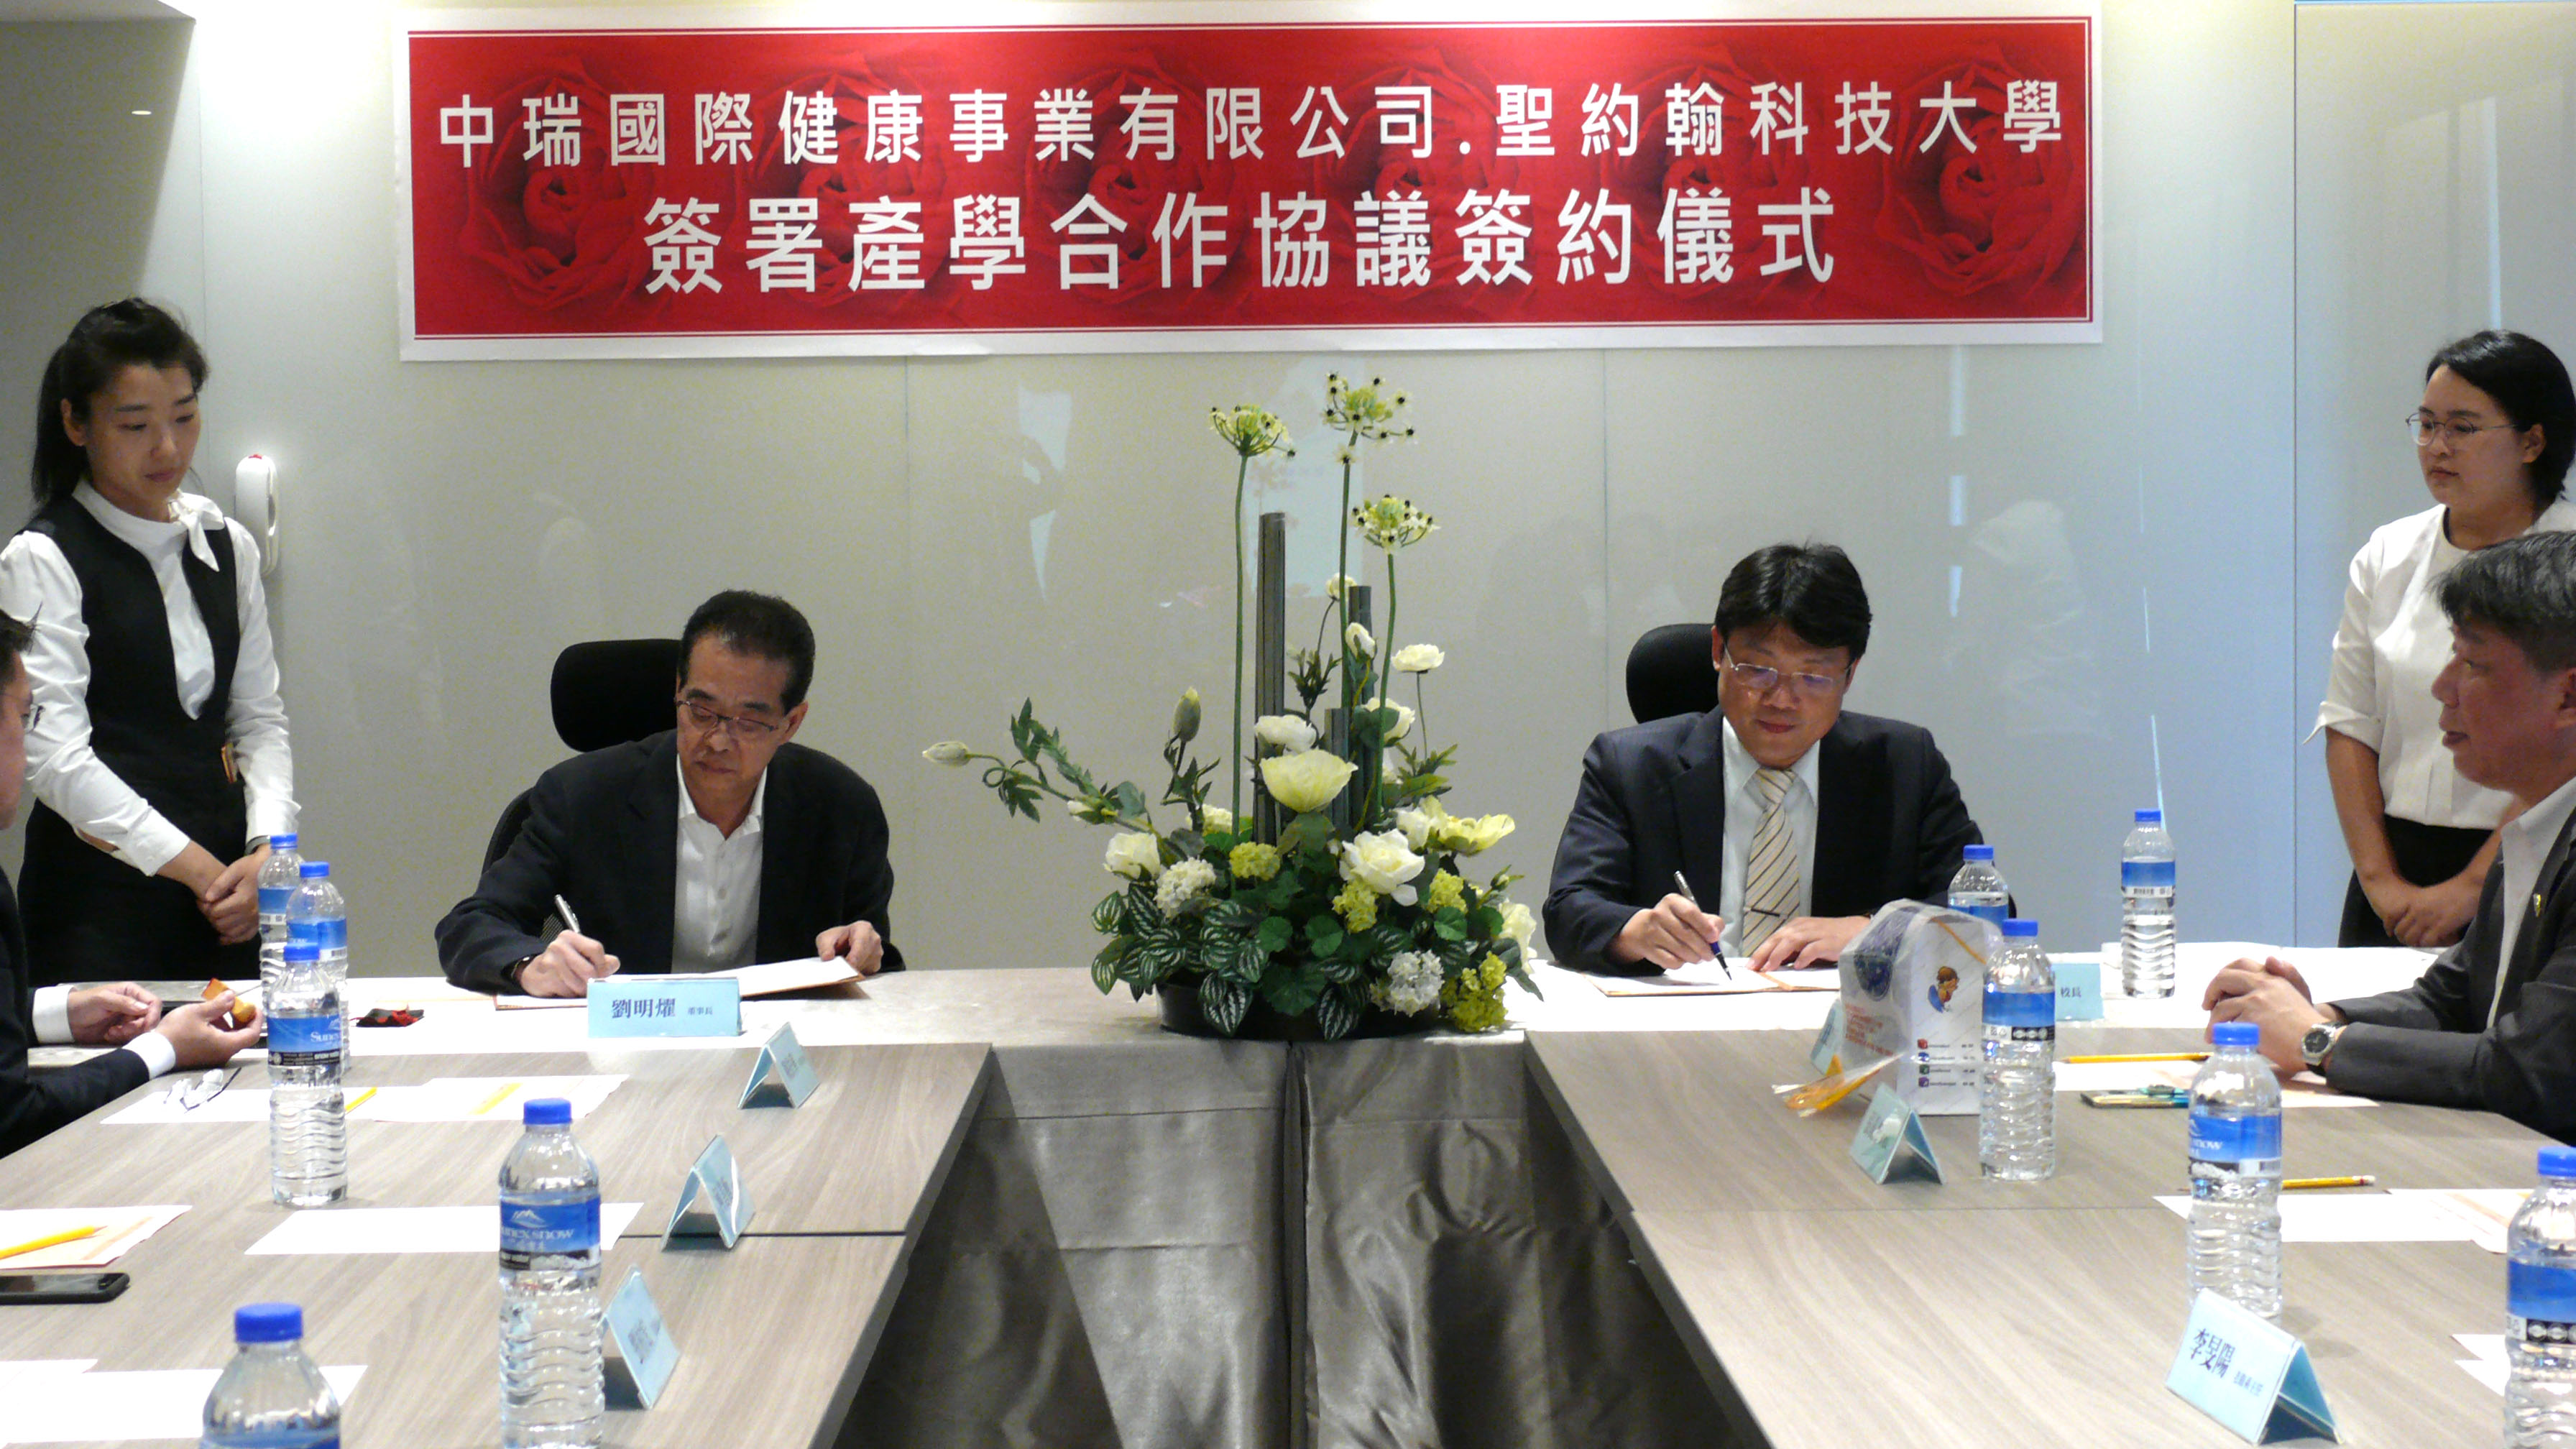 聖約翰科大艾和昌校長(右)與中瑞國際健康事業公司劉明燿董事長(左)簽署產學合作意向書